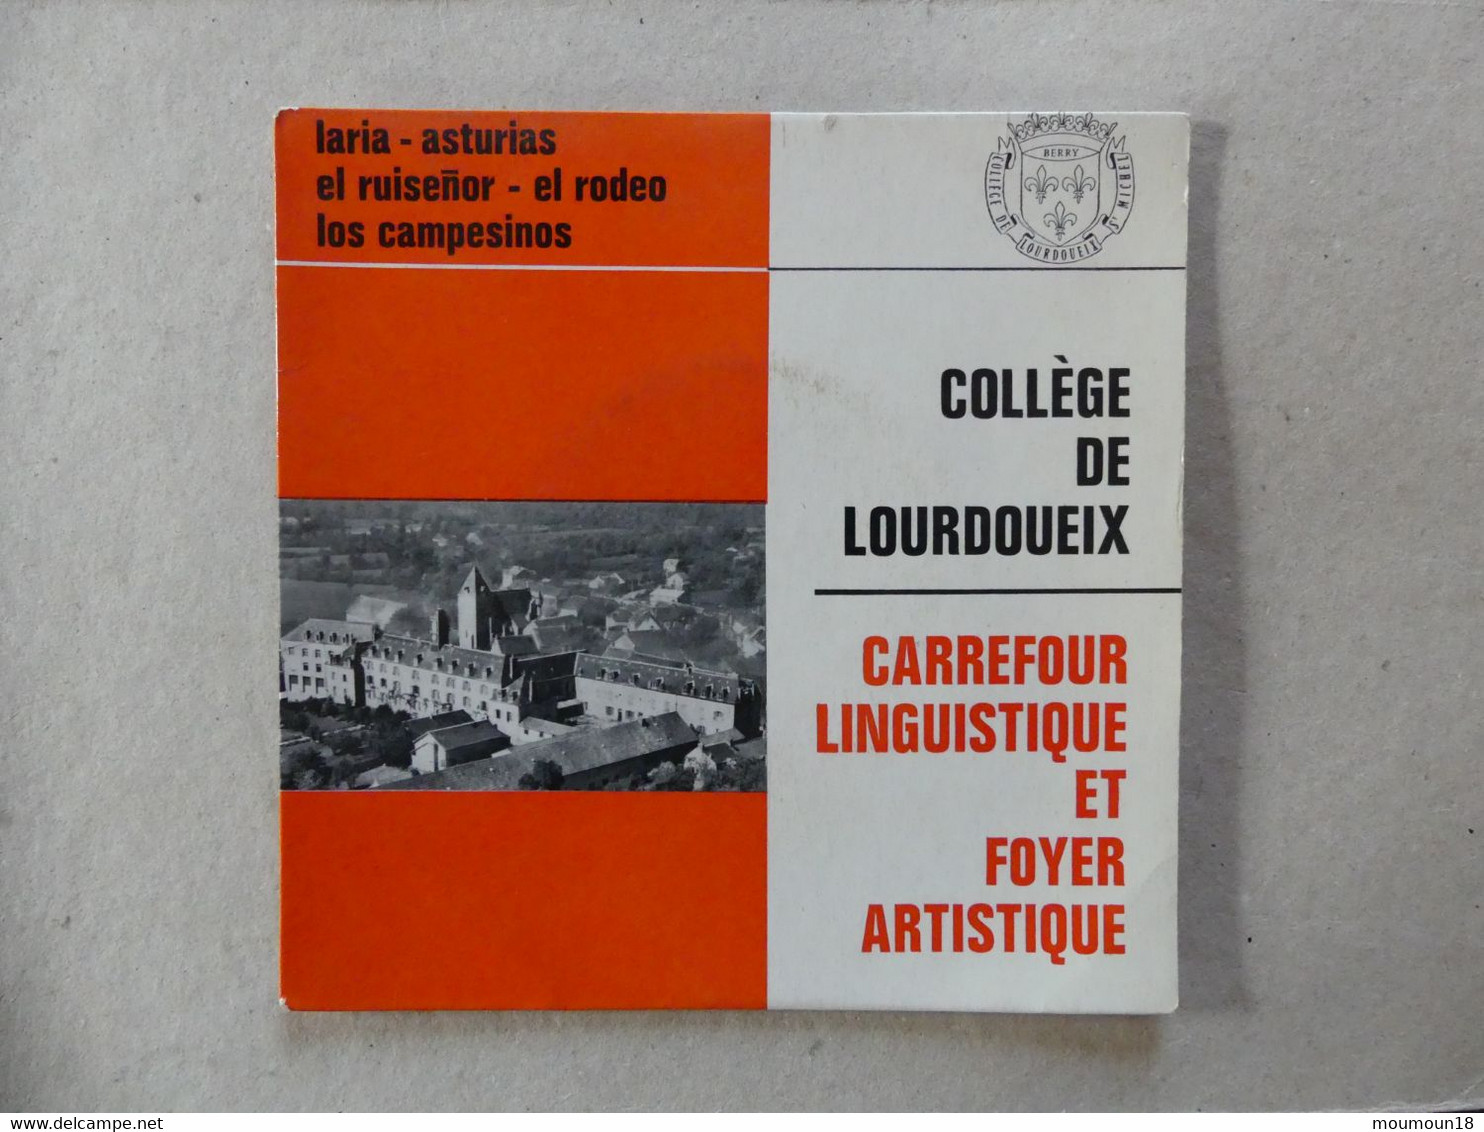 45 T College De Lourdoueix Carrefour Linguistique Et Foyer Artistique Matilla Ramos - Otros - Canción Española